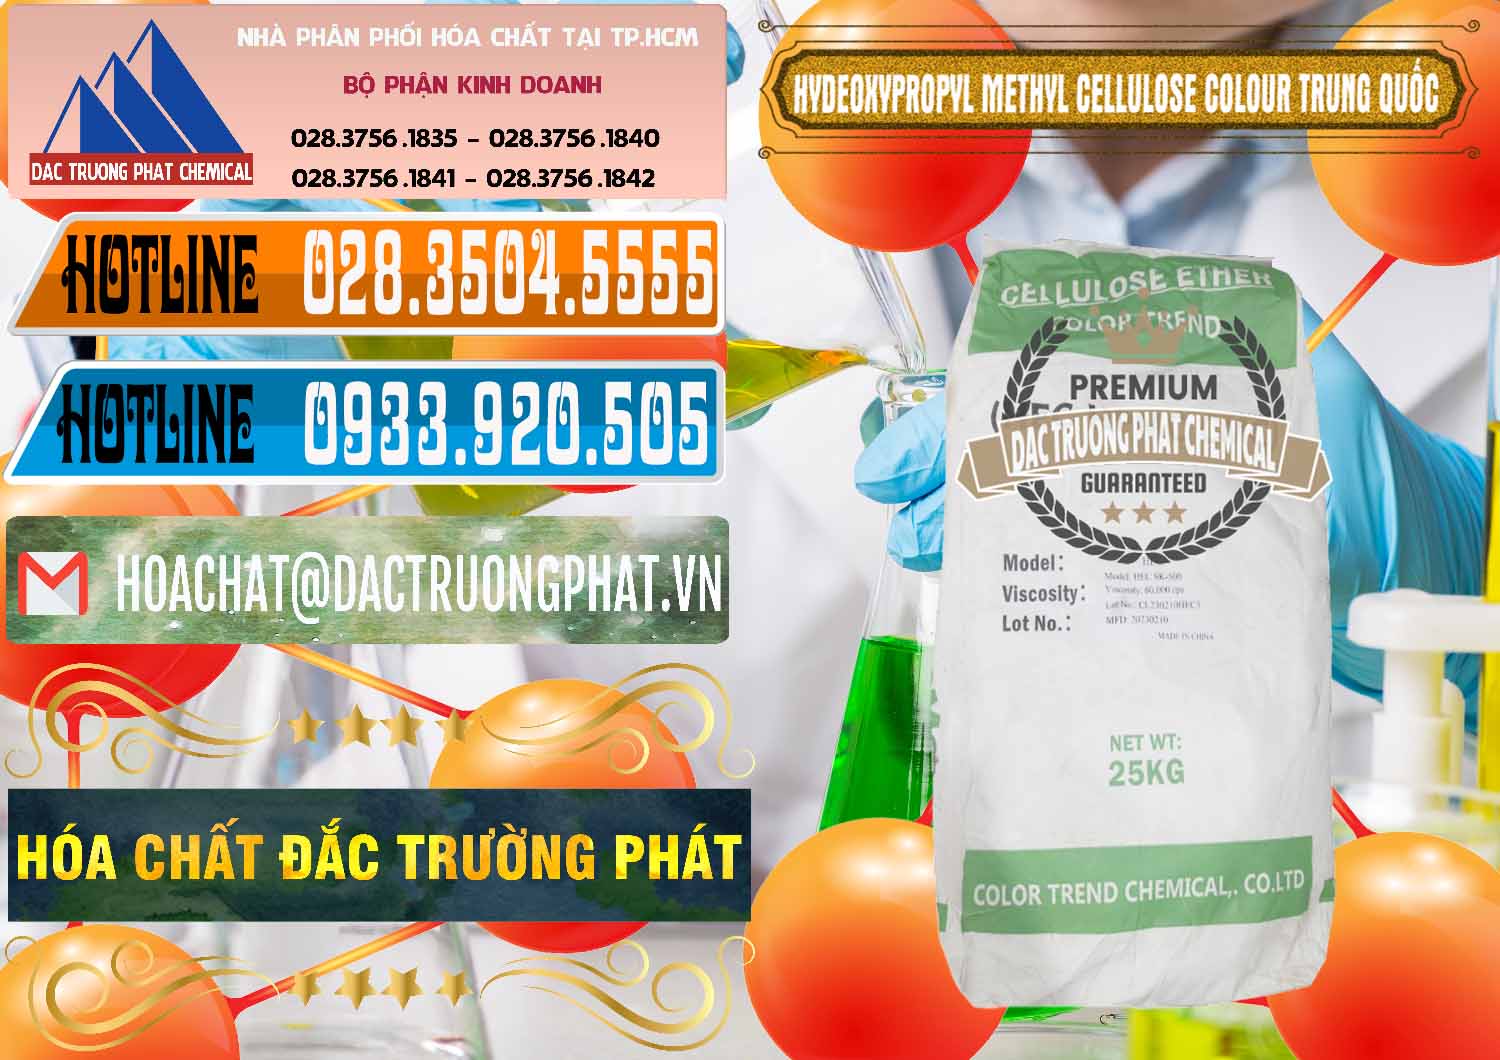 Công ty chuyên phân phối và bán Chất Tạo Đặc HPMC - Hydroxypropyl Methyl Cellulose Color Trung Quốc China - 0397 - Chuyên phân phối ( cung cấp ) hóa chất tại TP.HCM - stmp.net